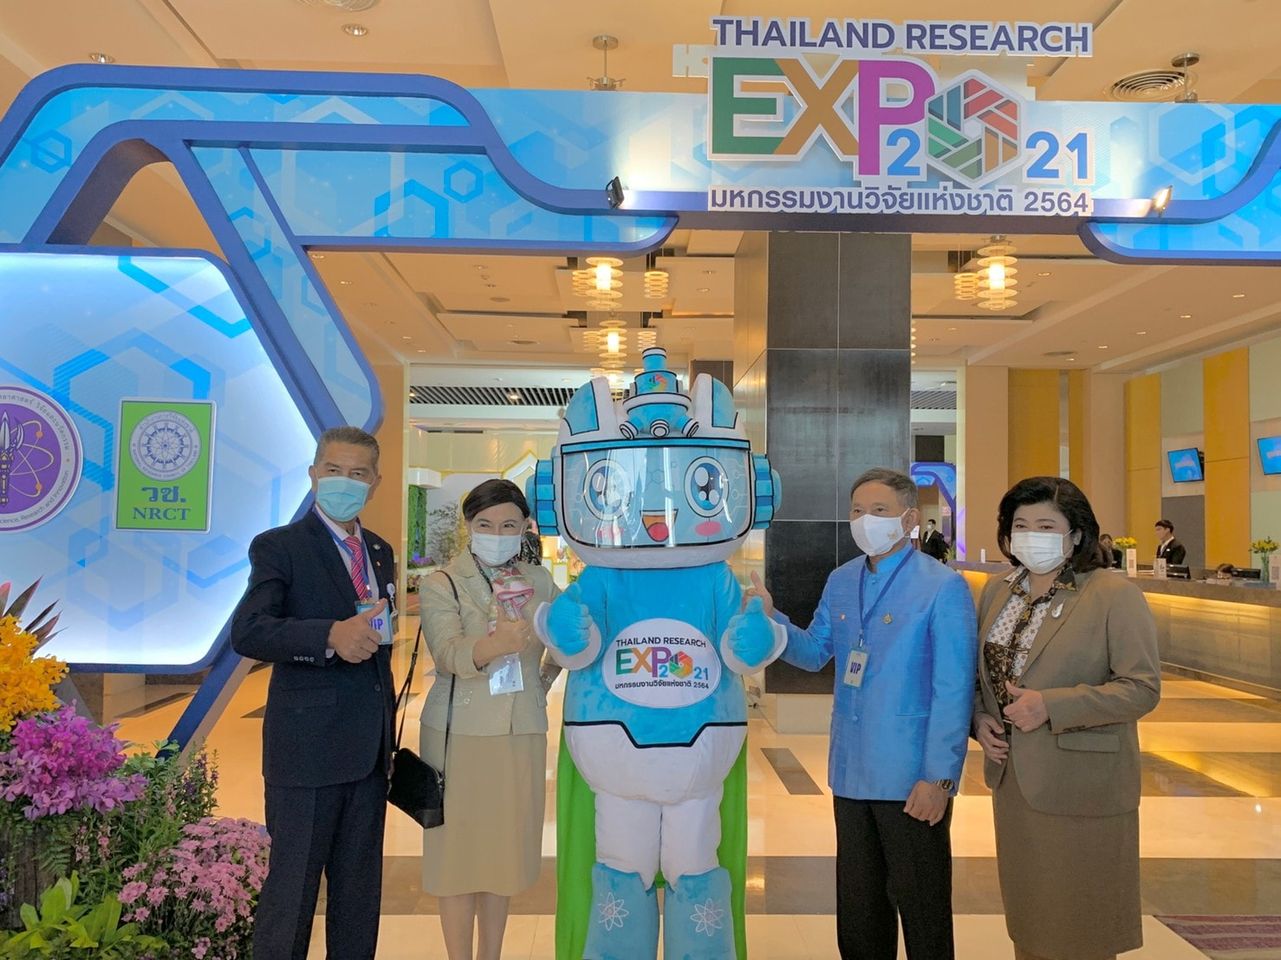 วันพฤหัสบดีที่ 25 พฤศจิกายน 2564 คณะกรรมาธิการการอุดมศึกษาฯ ร่วมงานสัมมนา และเยี่ยมชมนิทรรศการงานมหกรรมงานวิจัยแห่งชาติ 2564 (Thailand Research Expo 2021) ณ โรงแรมเซ็นทาราแกรนด์ เซ็นทรัลเวิล์ด